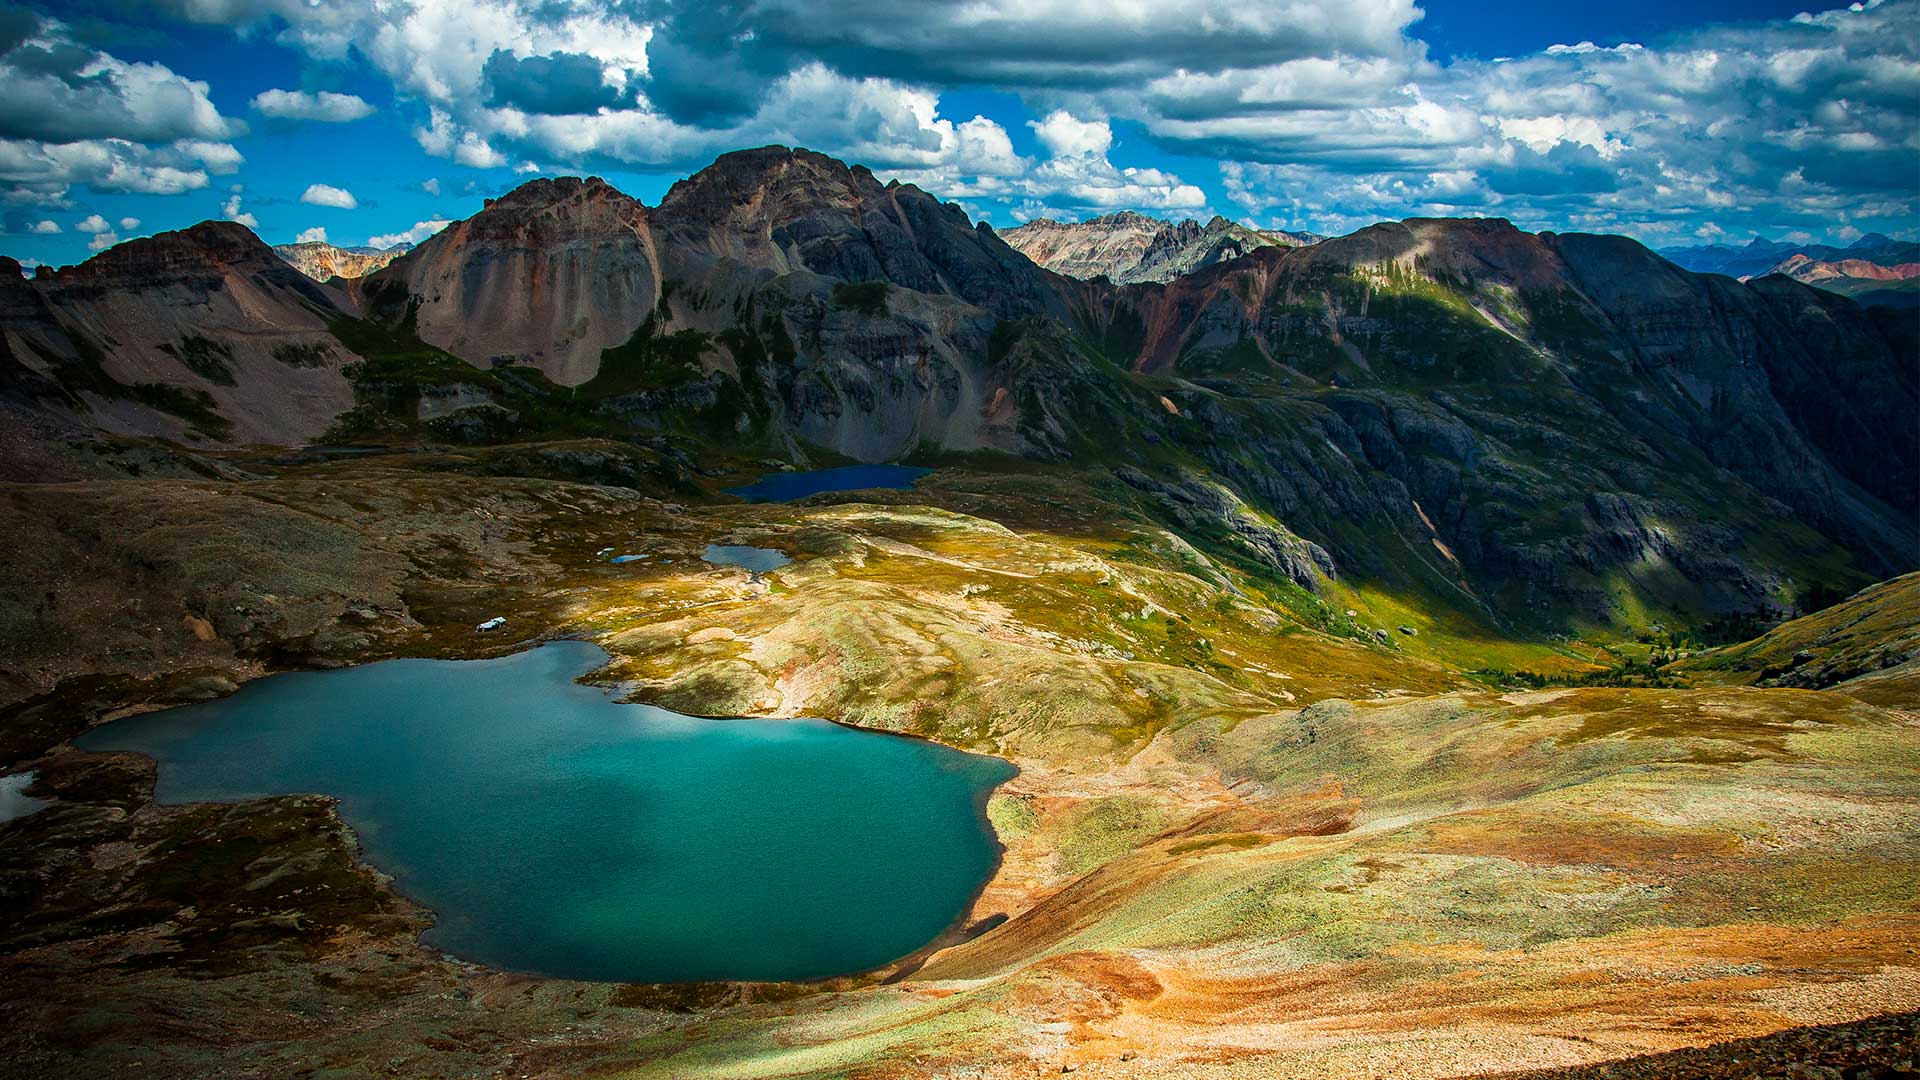 οι 5 πιο εντυπωσιακές λίμνες του πλανήτη